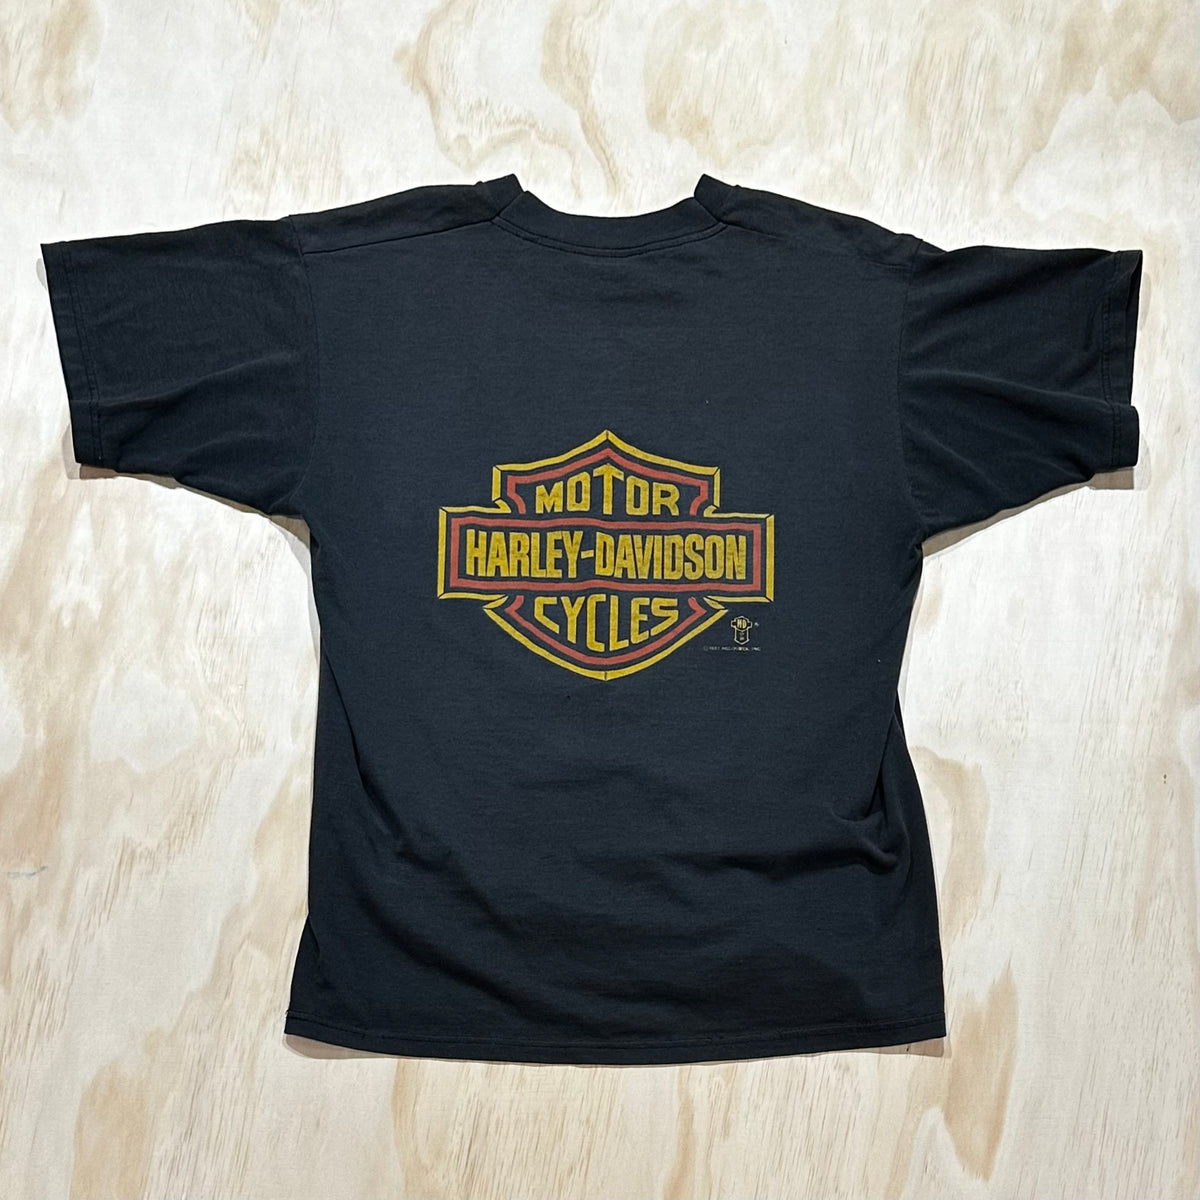 Vintage 1980s Harley Davidson Holoubek Eagle T-Shirt Made in USA